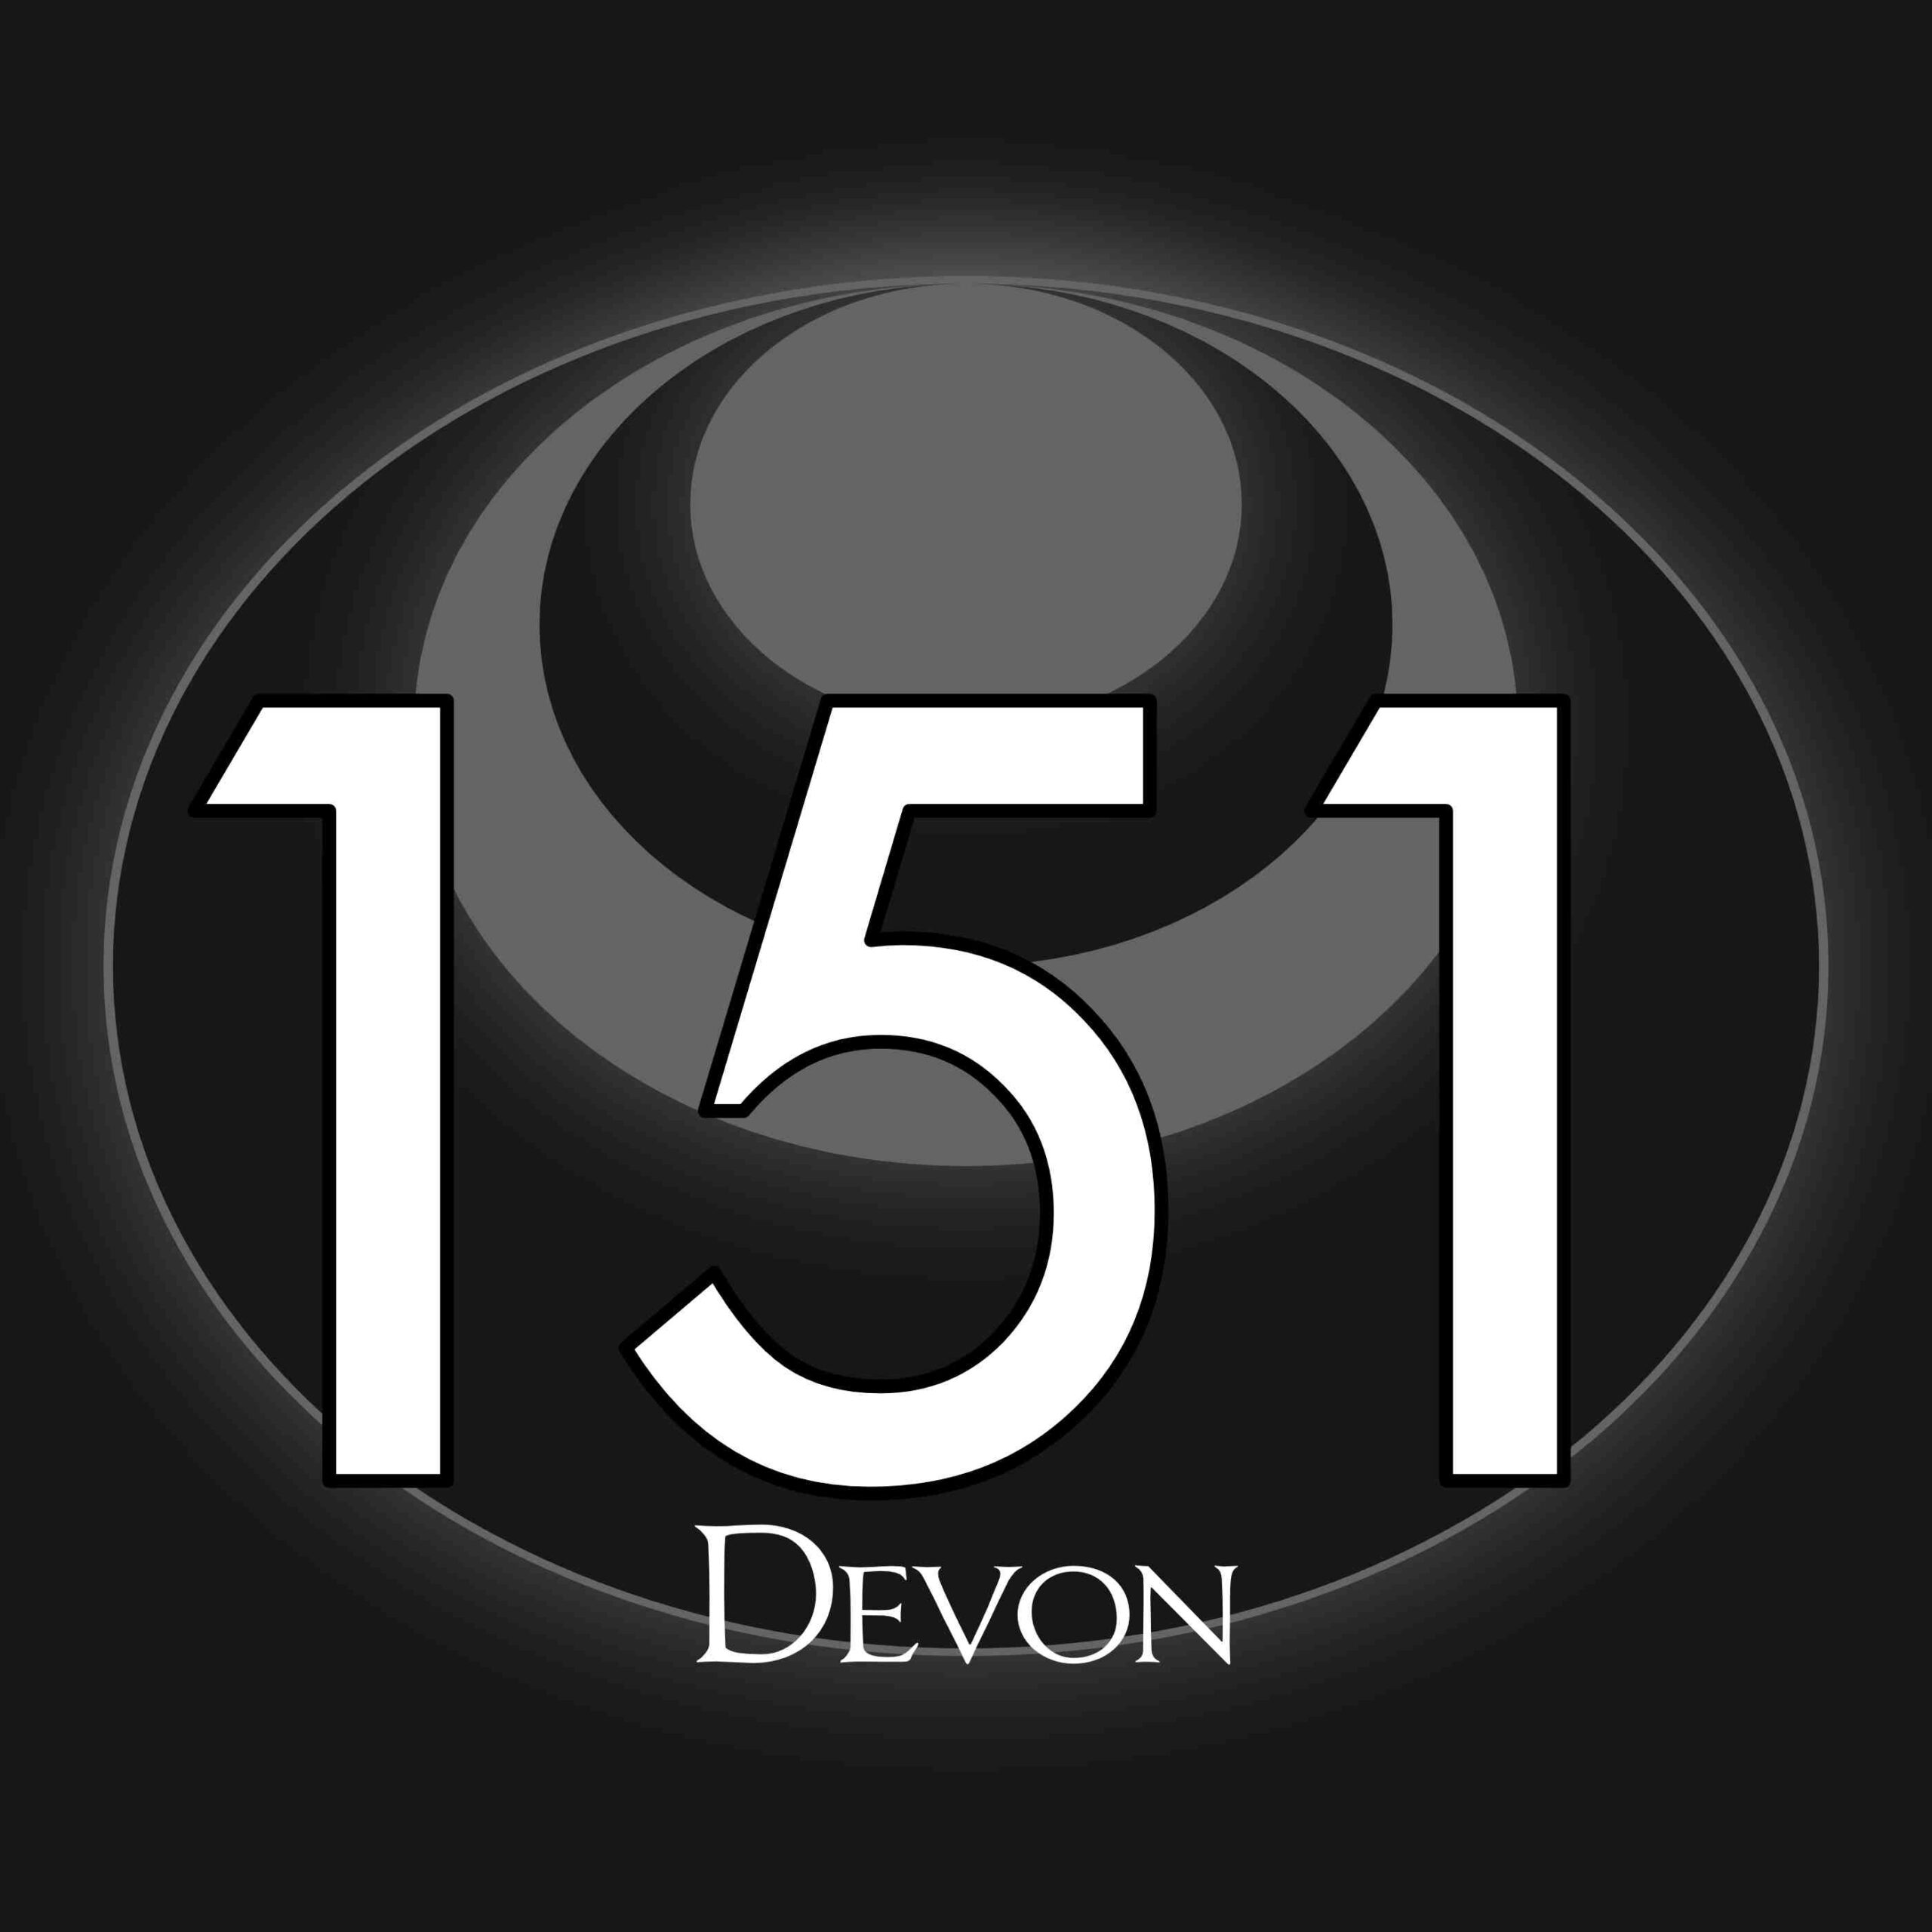 151 – Devon